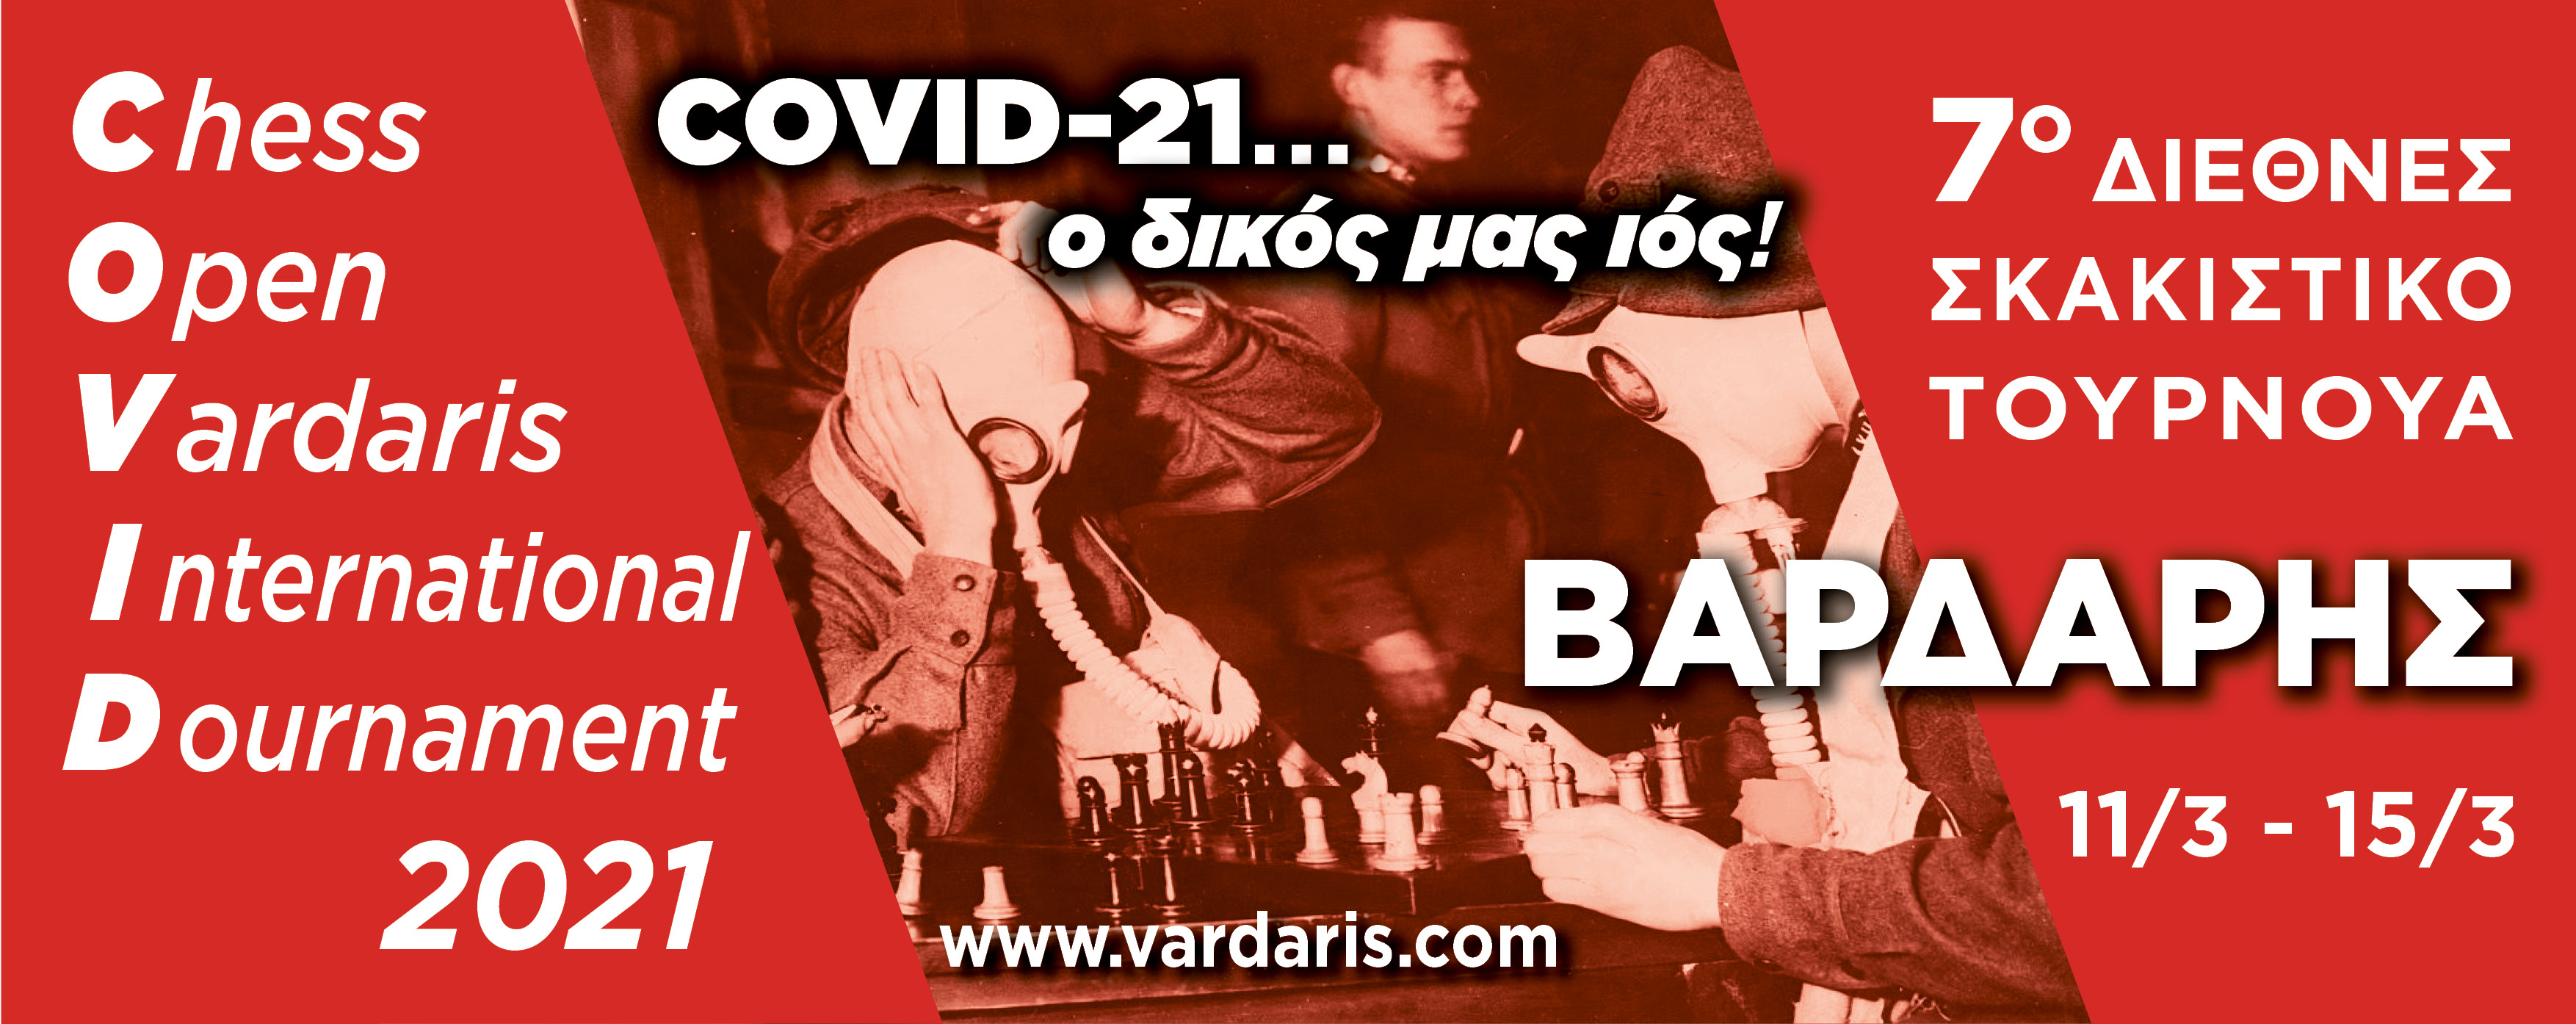 Ανακοίνωση για το 7ο Διεθνές Σκακιστικό Τουρνουά "Βαρδάρης"